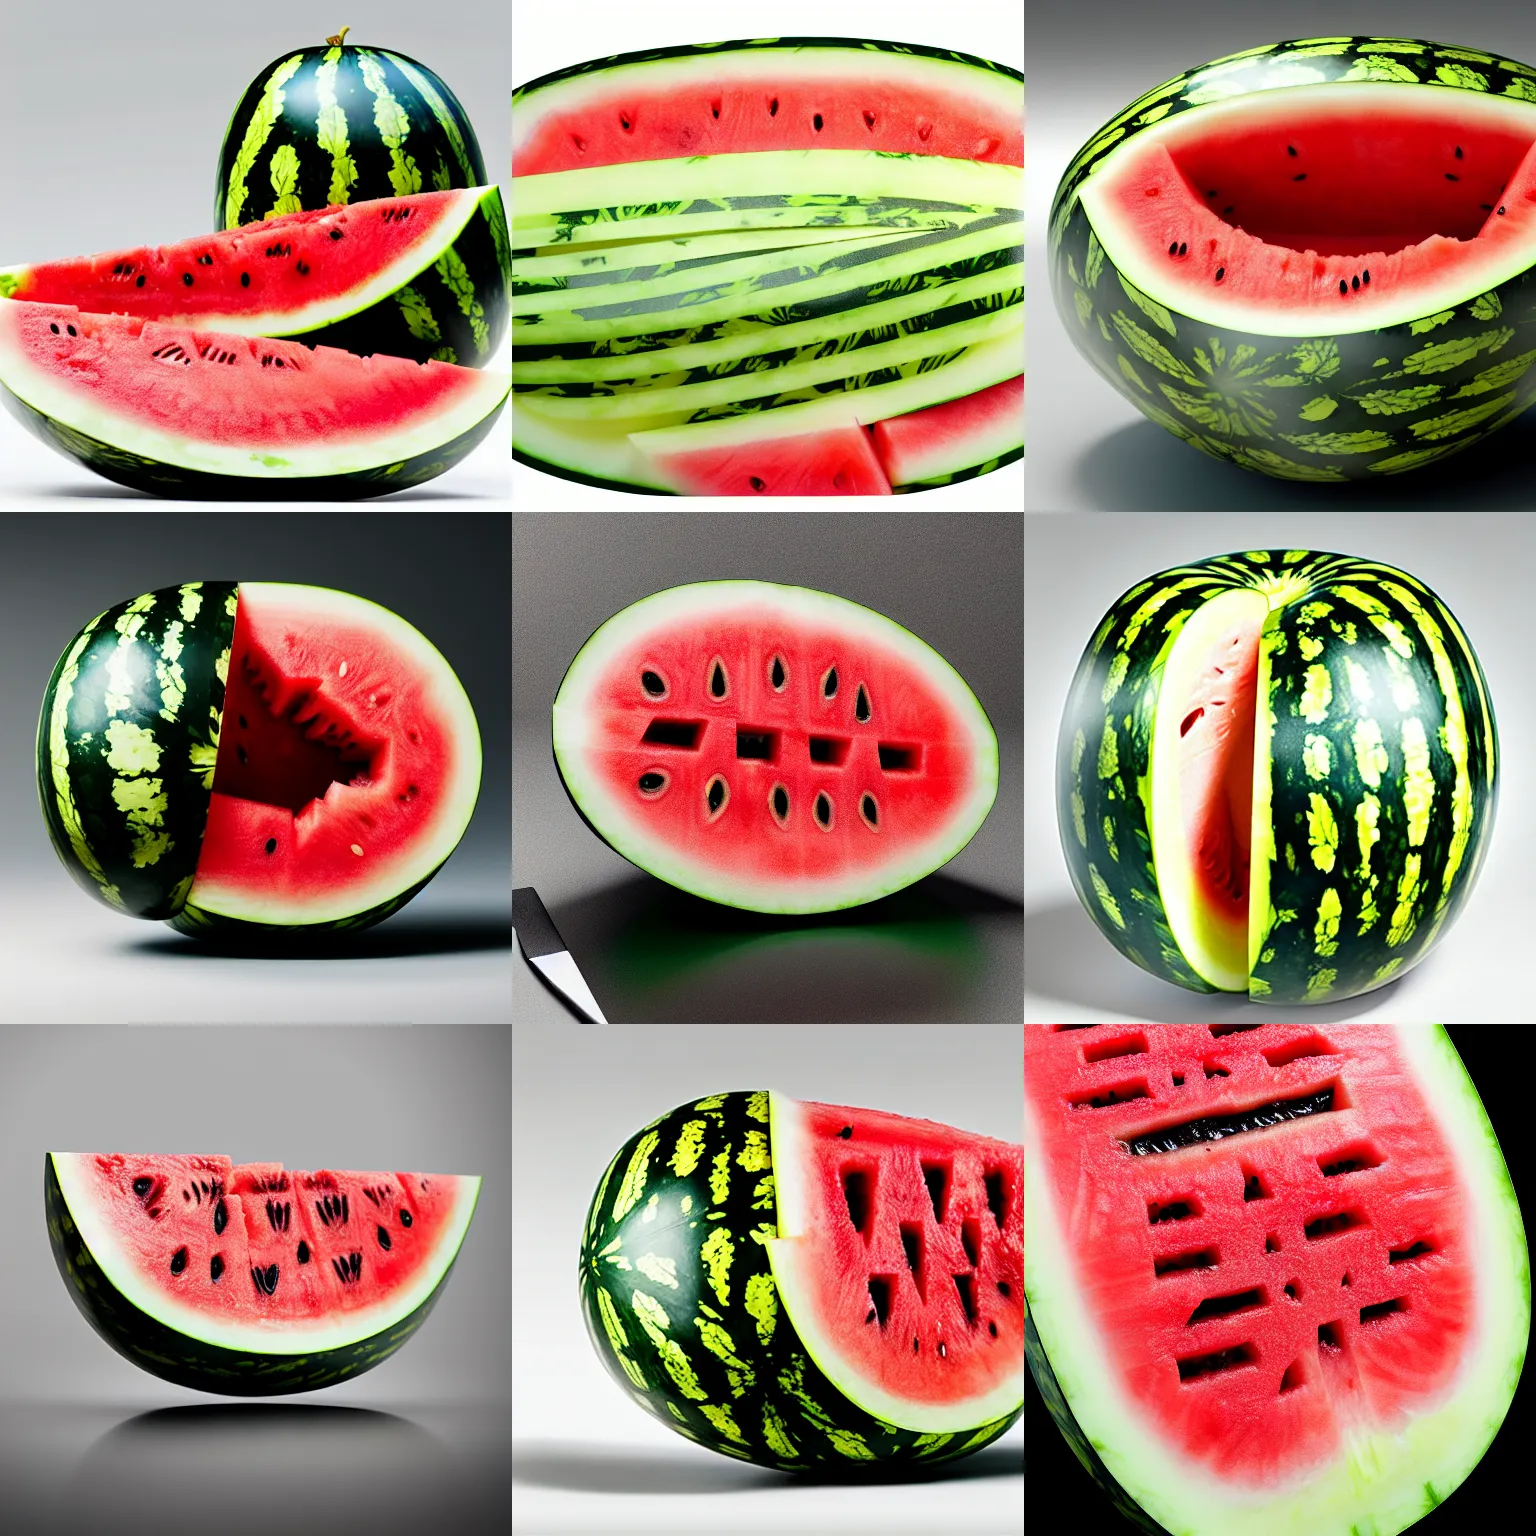 Prompt: a whole uncut watermelon, detailed render, 8k